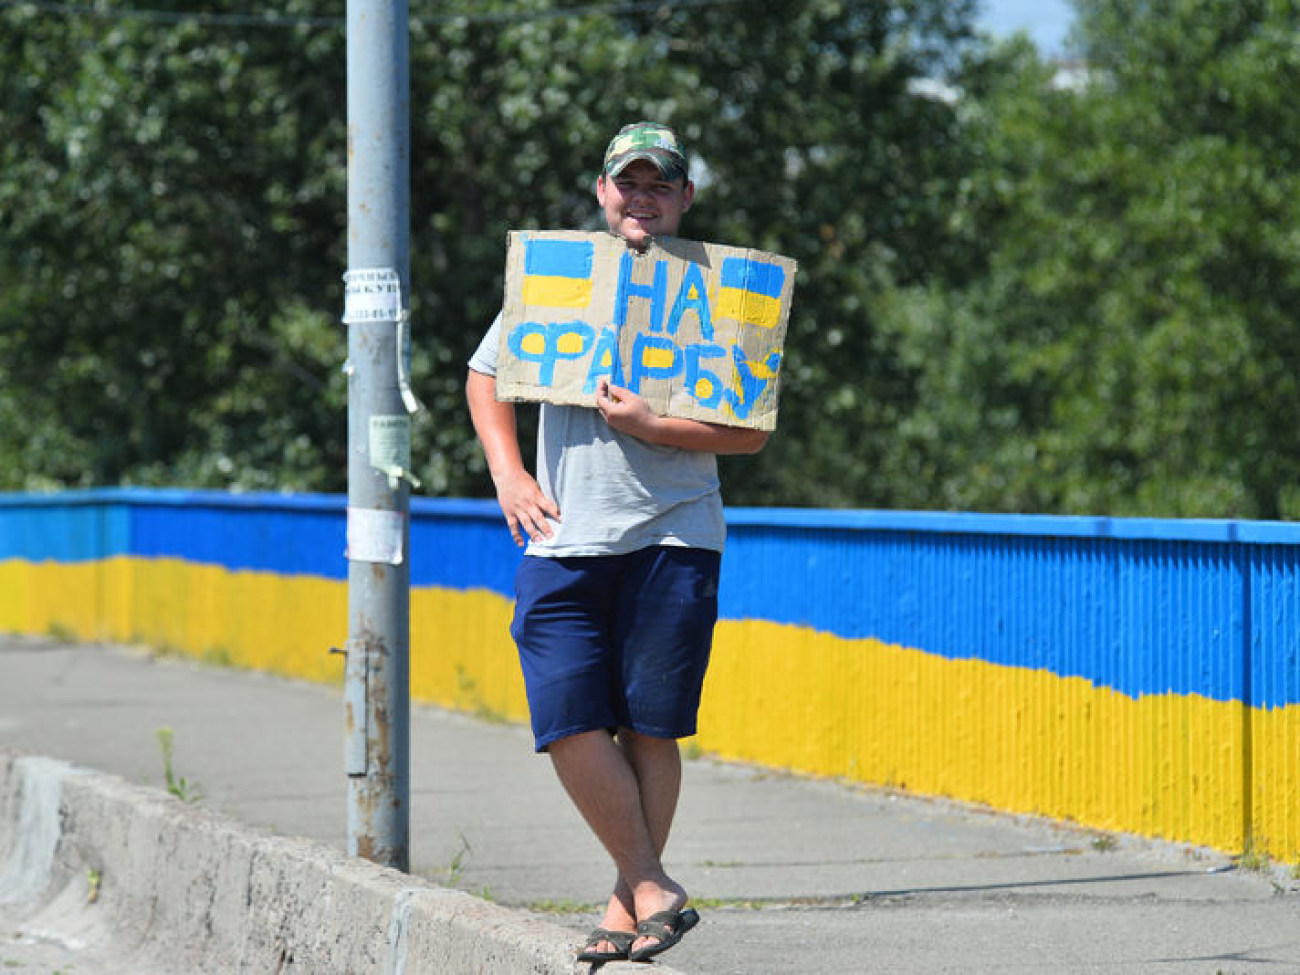 Ко Дню Независимости Киев раскрашивают в национальные цвета, 29 июля 2014г.